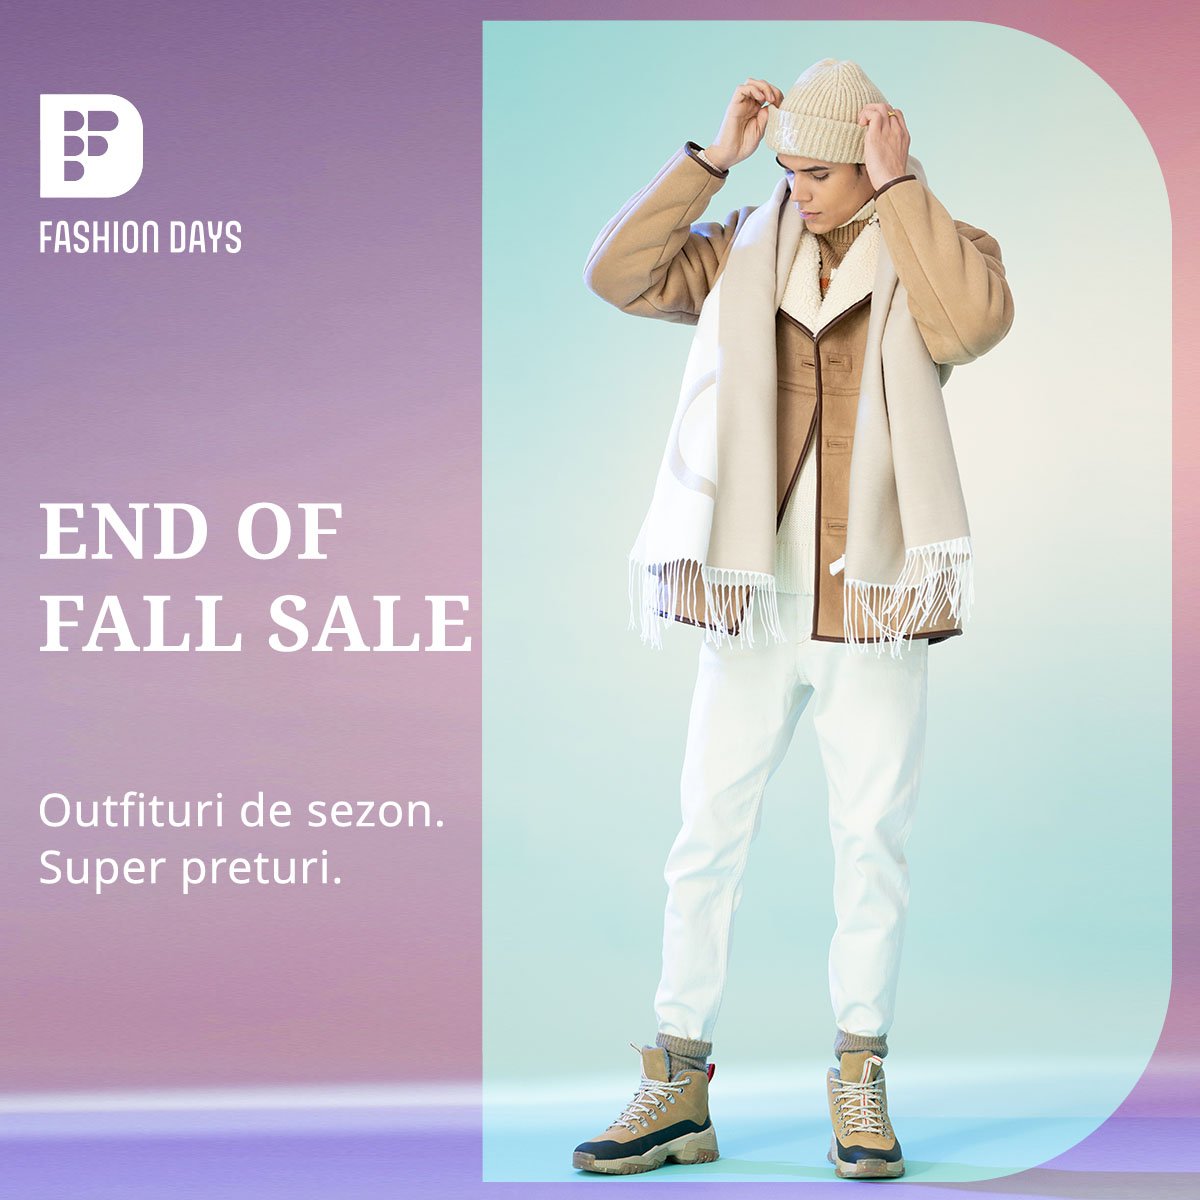 End of Fall Sale - super preturi la outfiturile de sezon pentru barbati